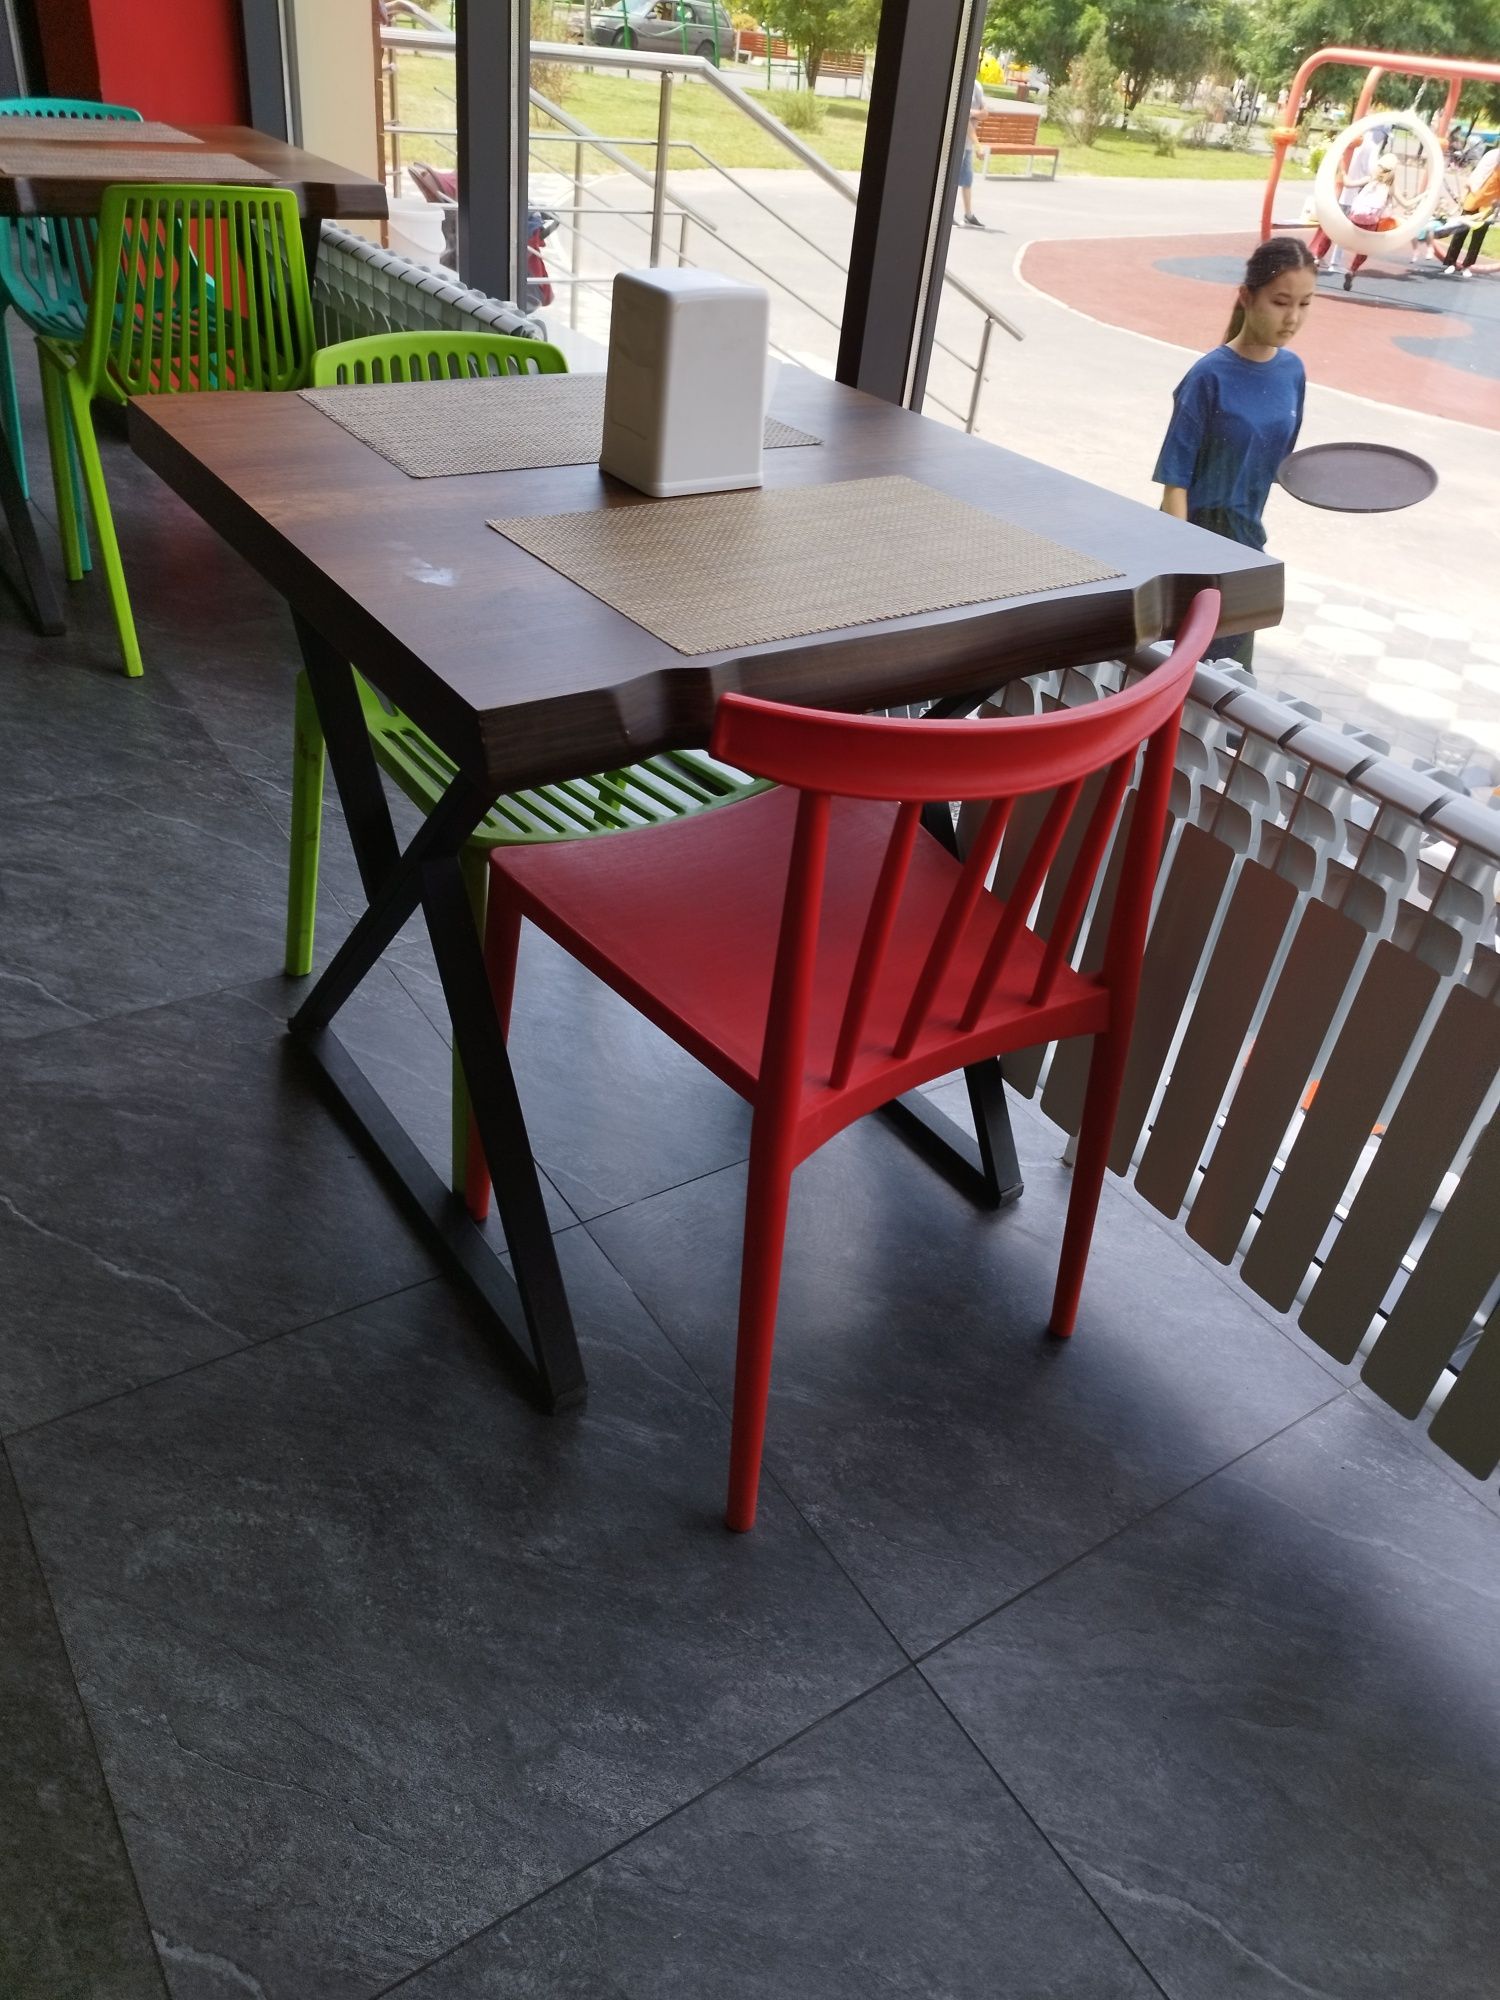 Пластиковая мебель,столы,стулья для кафе